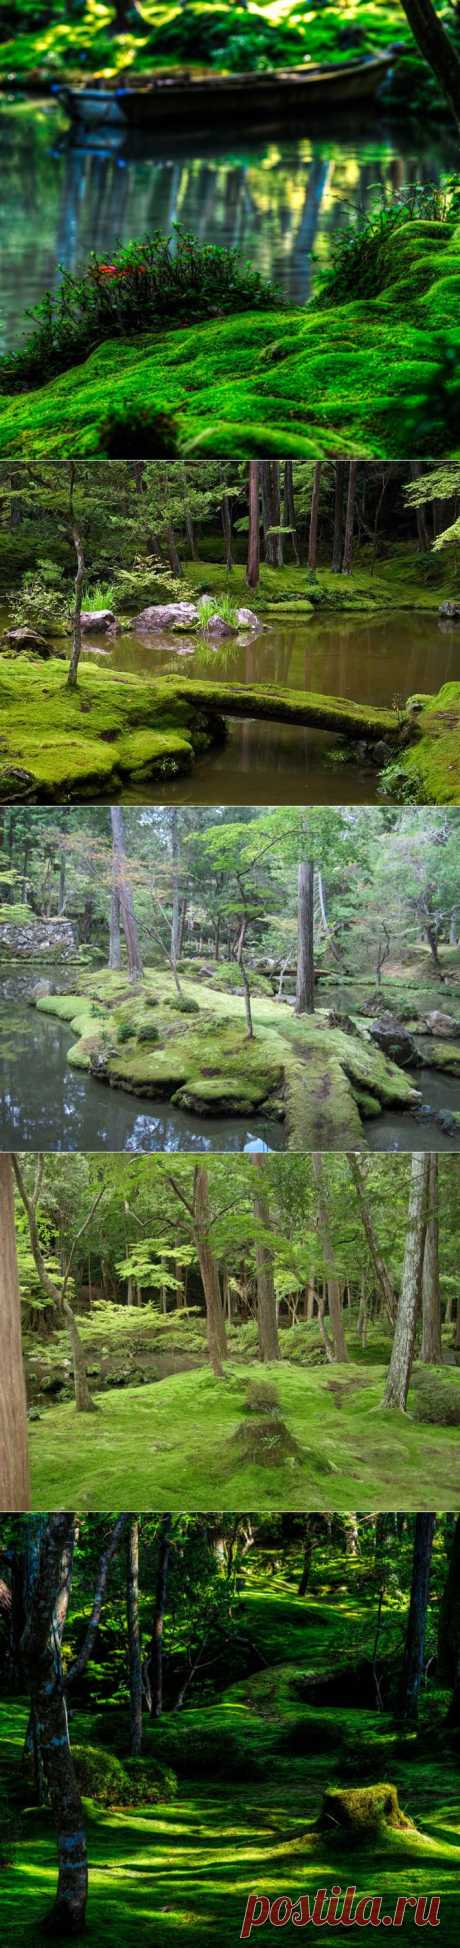 Японский сад мхов / Туристический спутник